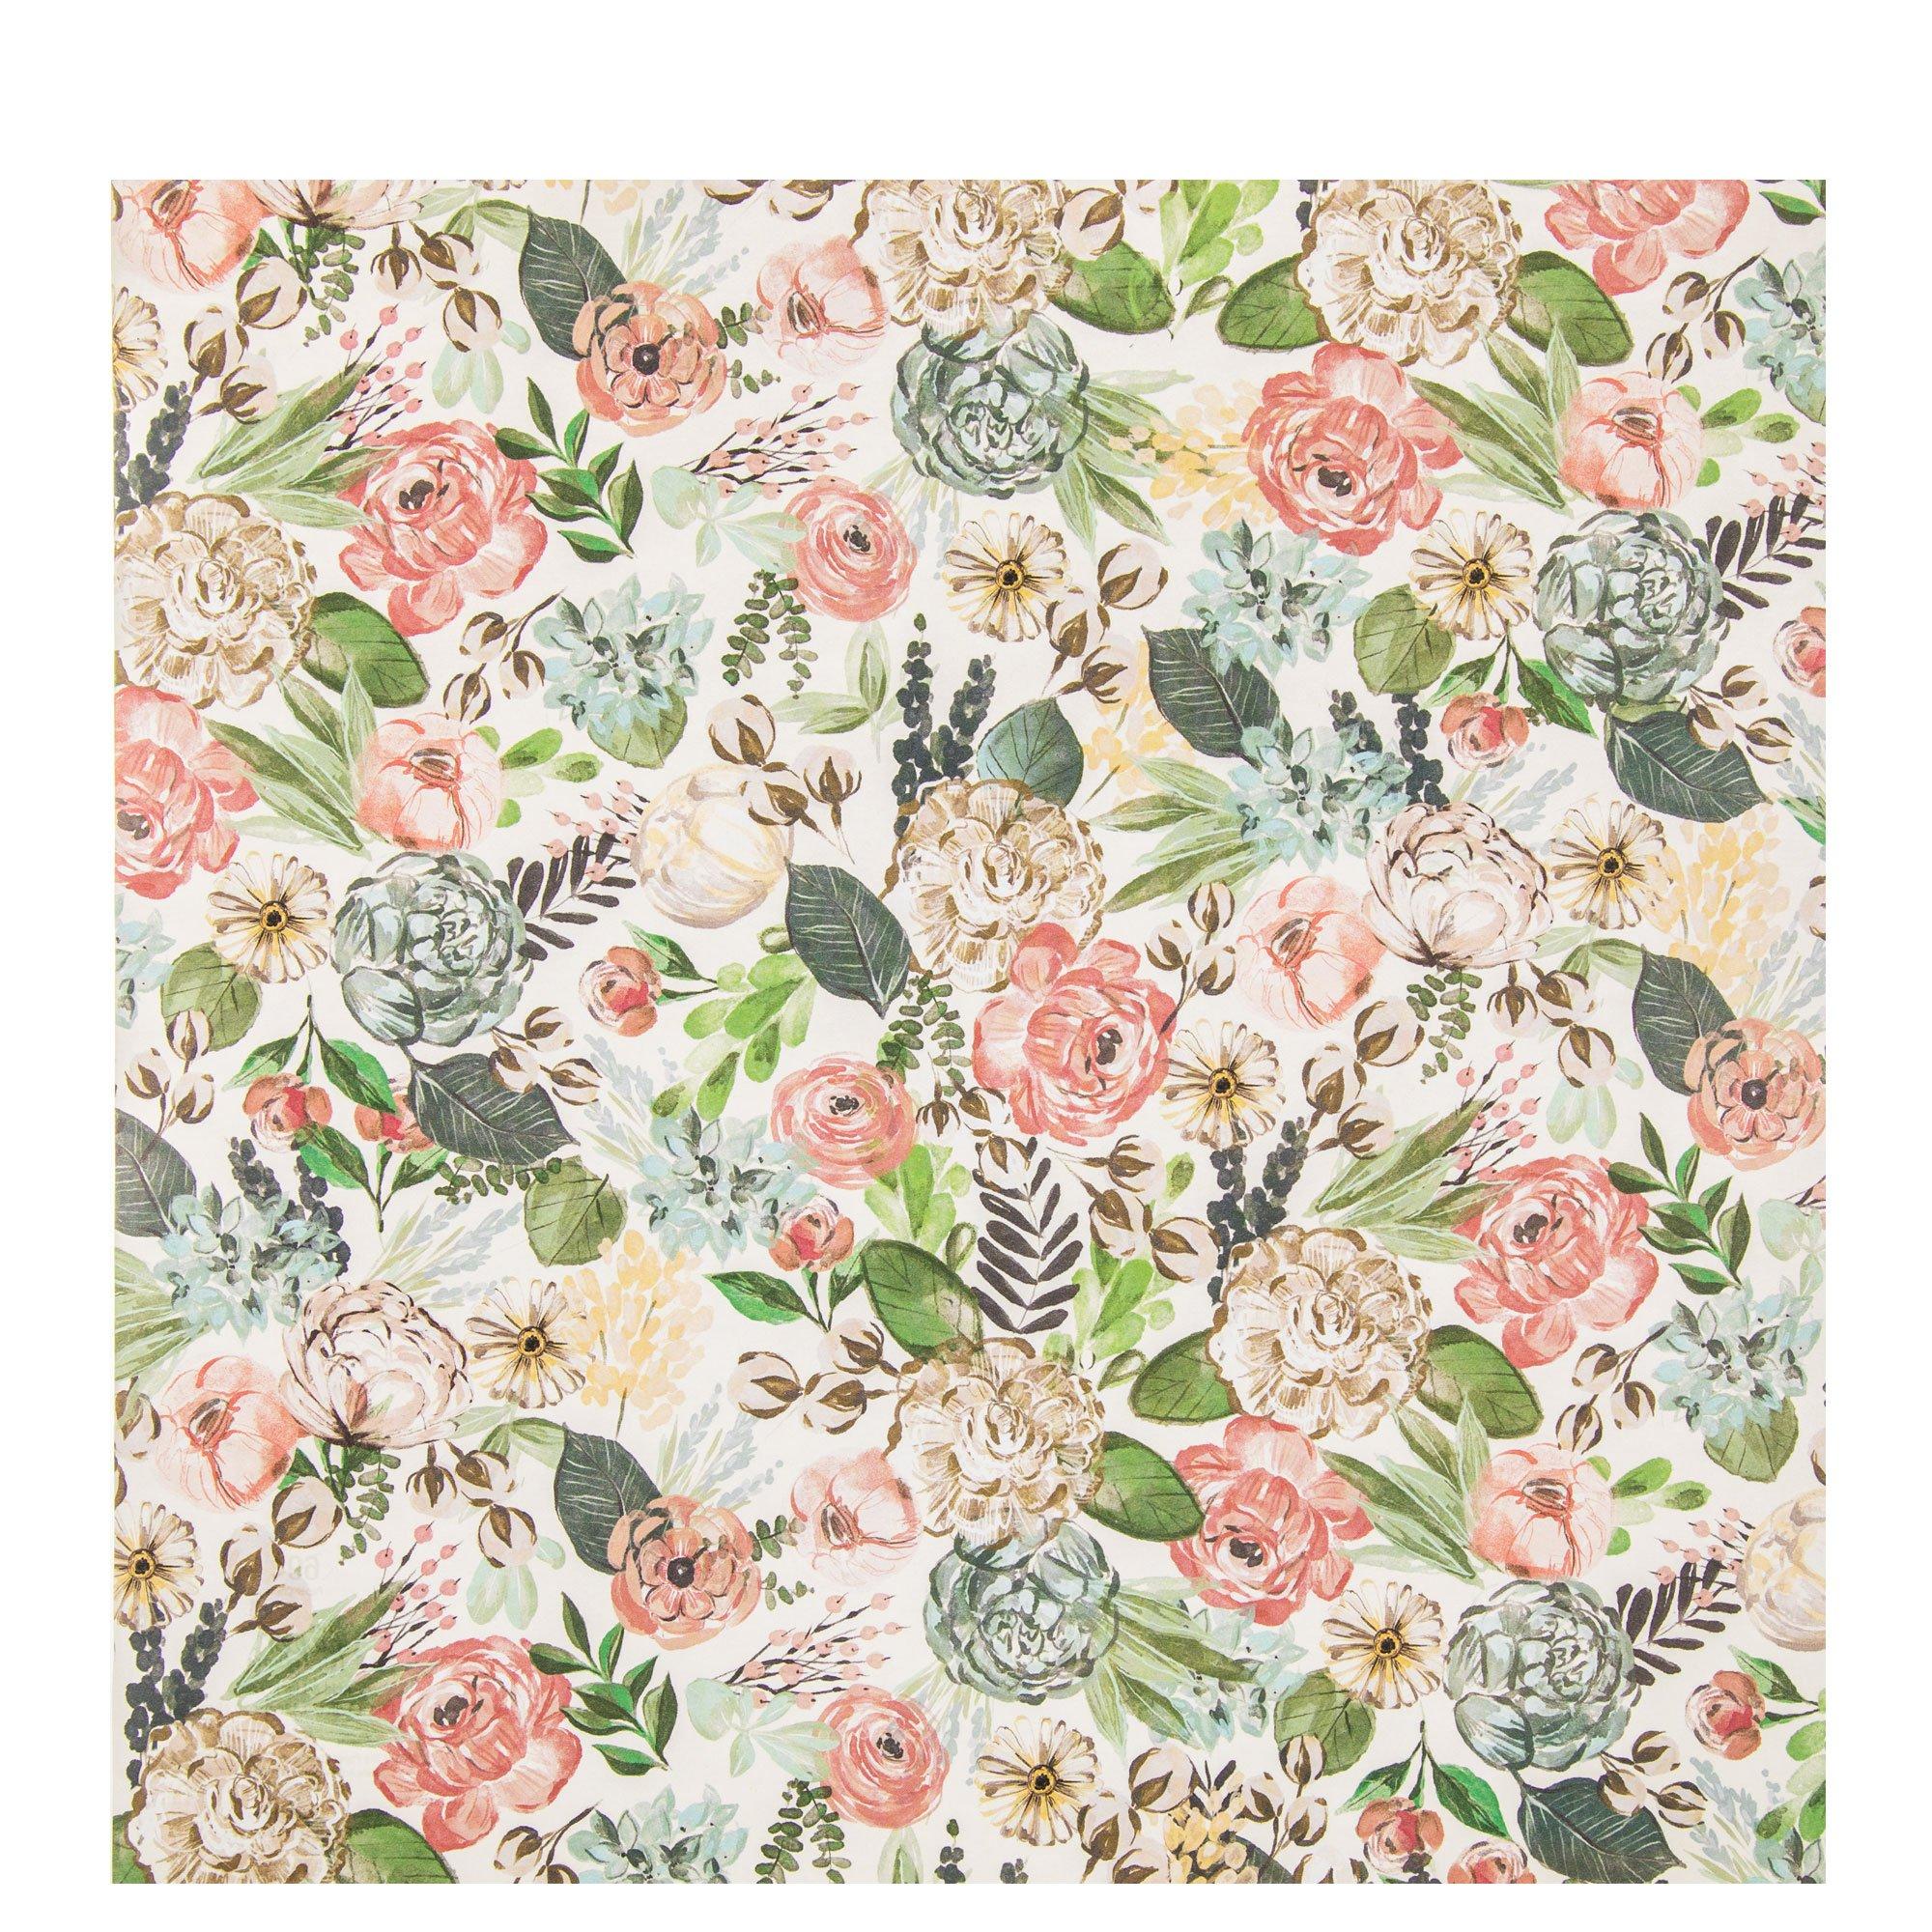 Earth Tone Floral Scrapbook Paper - 12 x 12